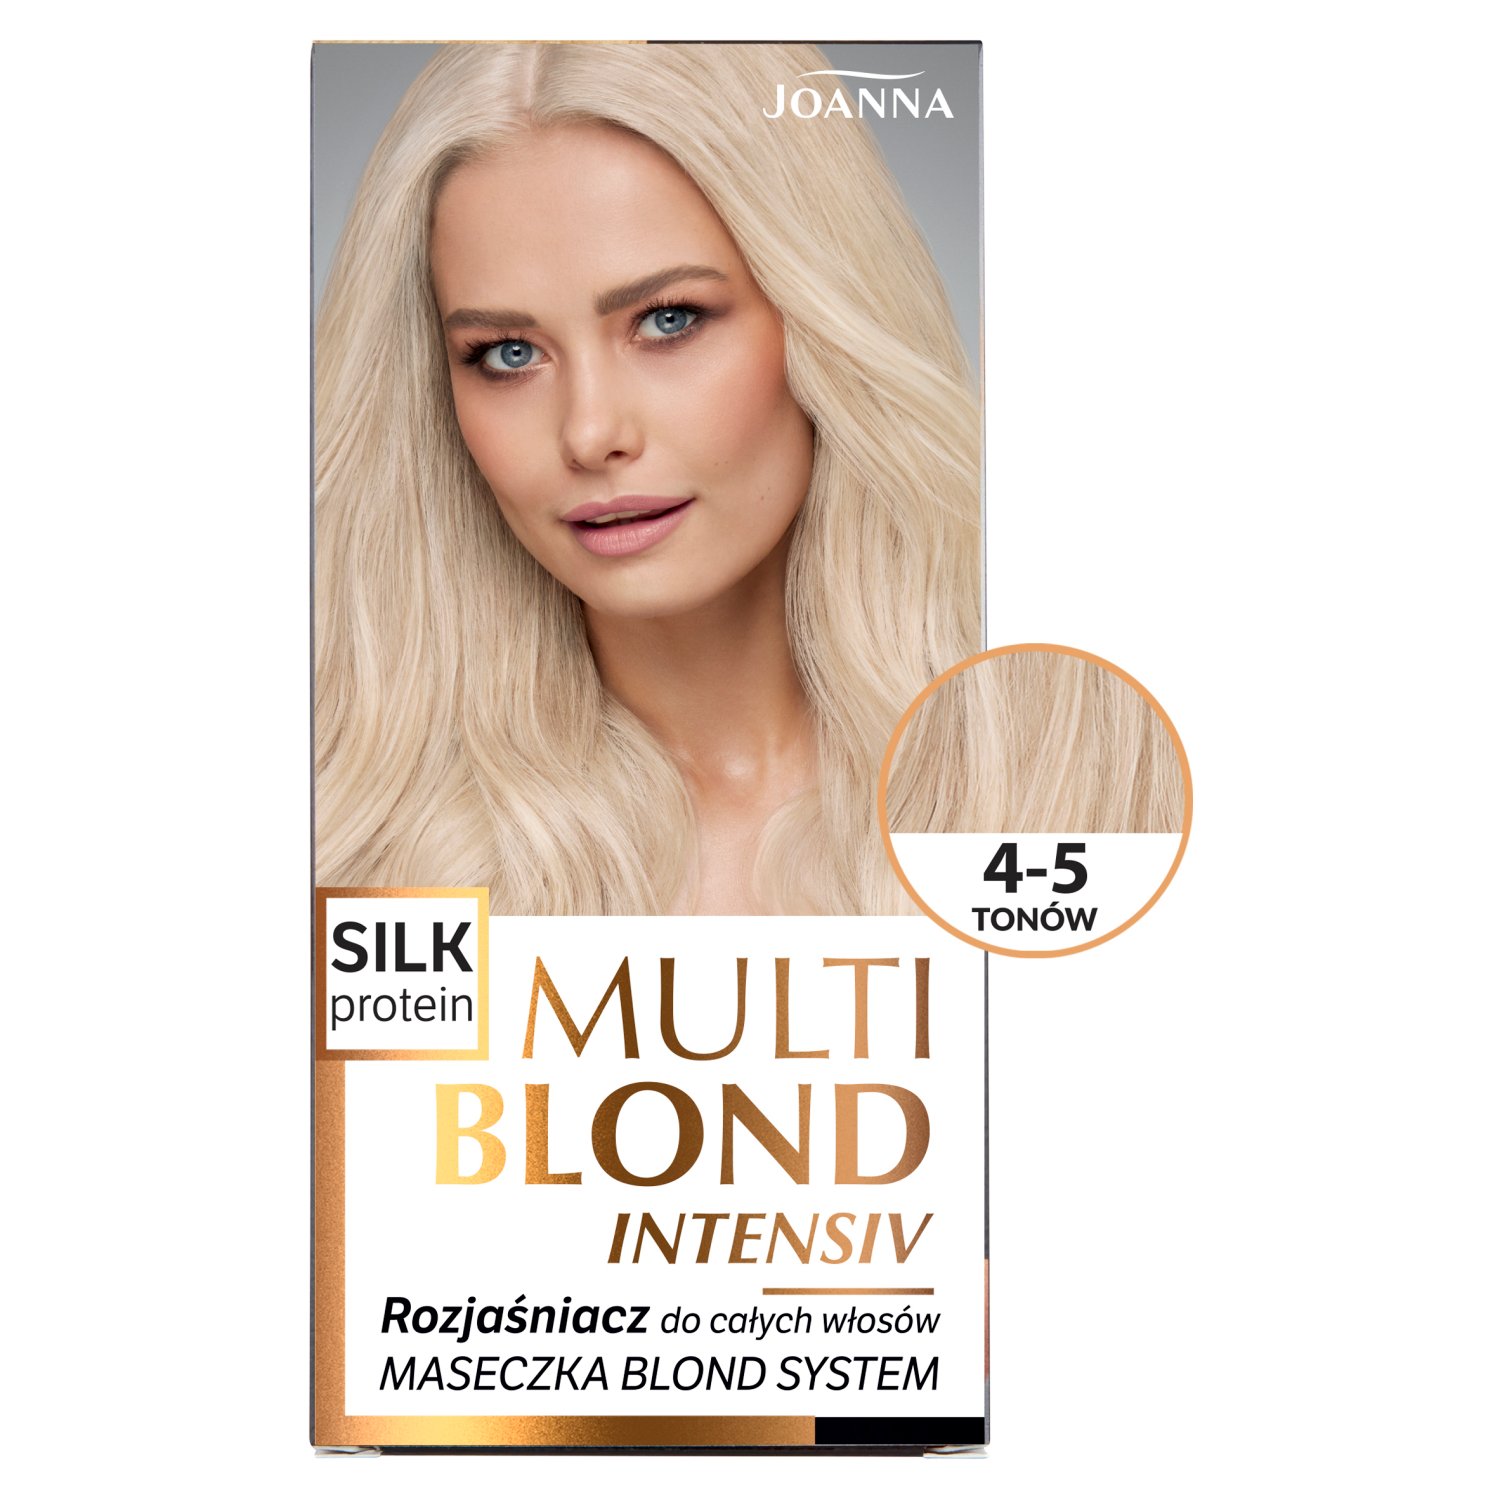 Joanna Multi Blond Intensiv осветлитель на 4-5 тонов для целых волос, 1 упаковка